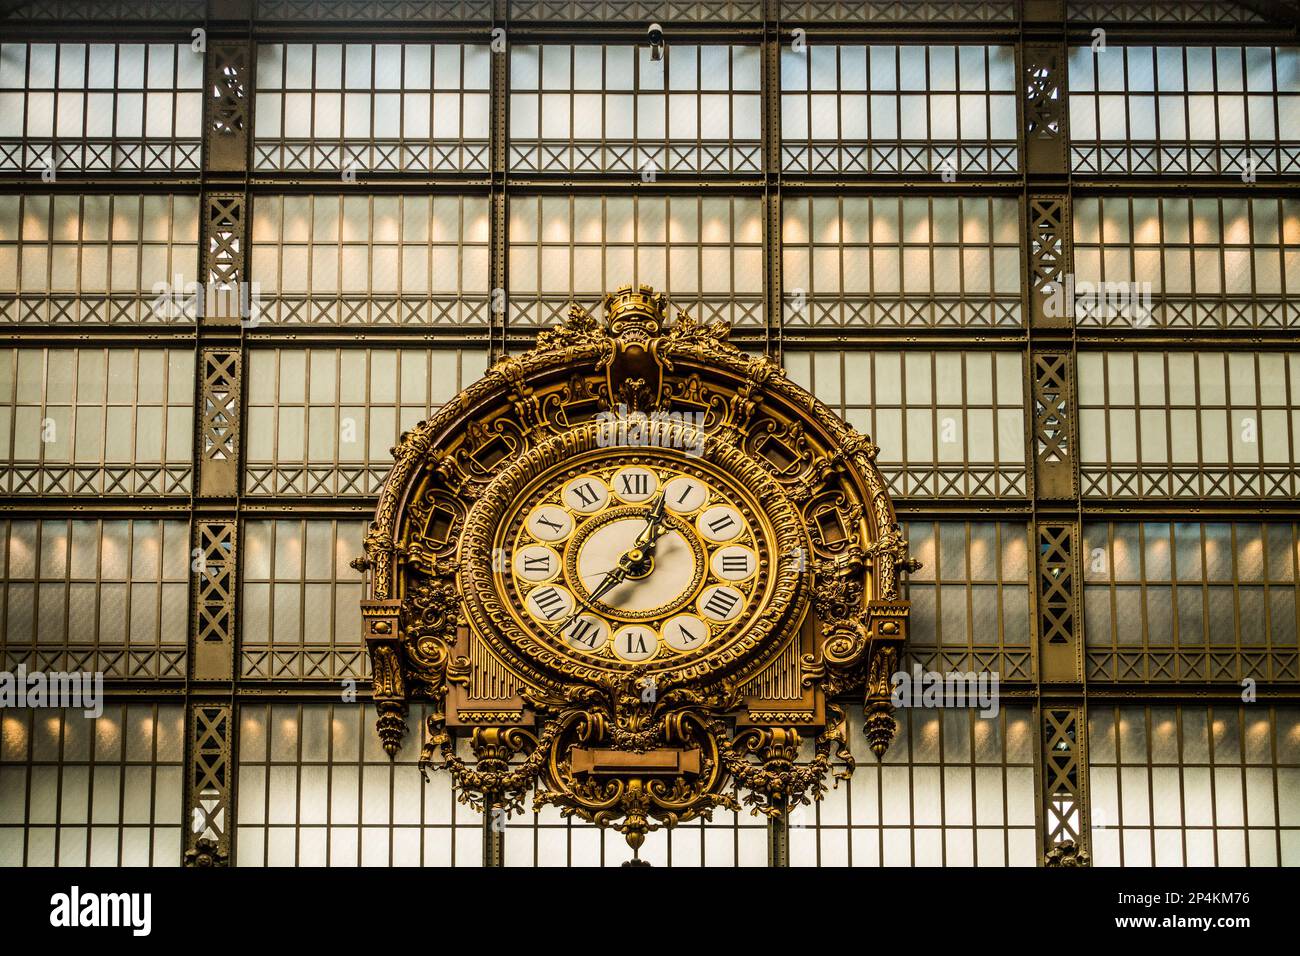 Horloge et fenêtre, Musée d'Orsay, Paris, France Banque D'Images